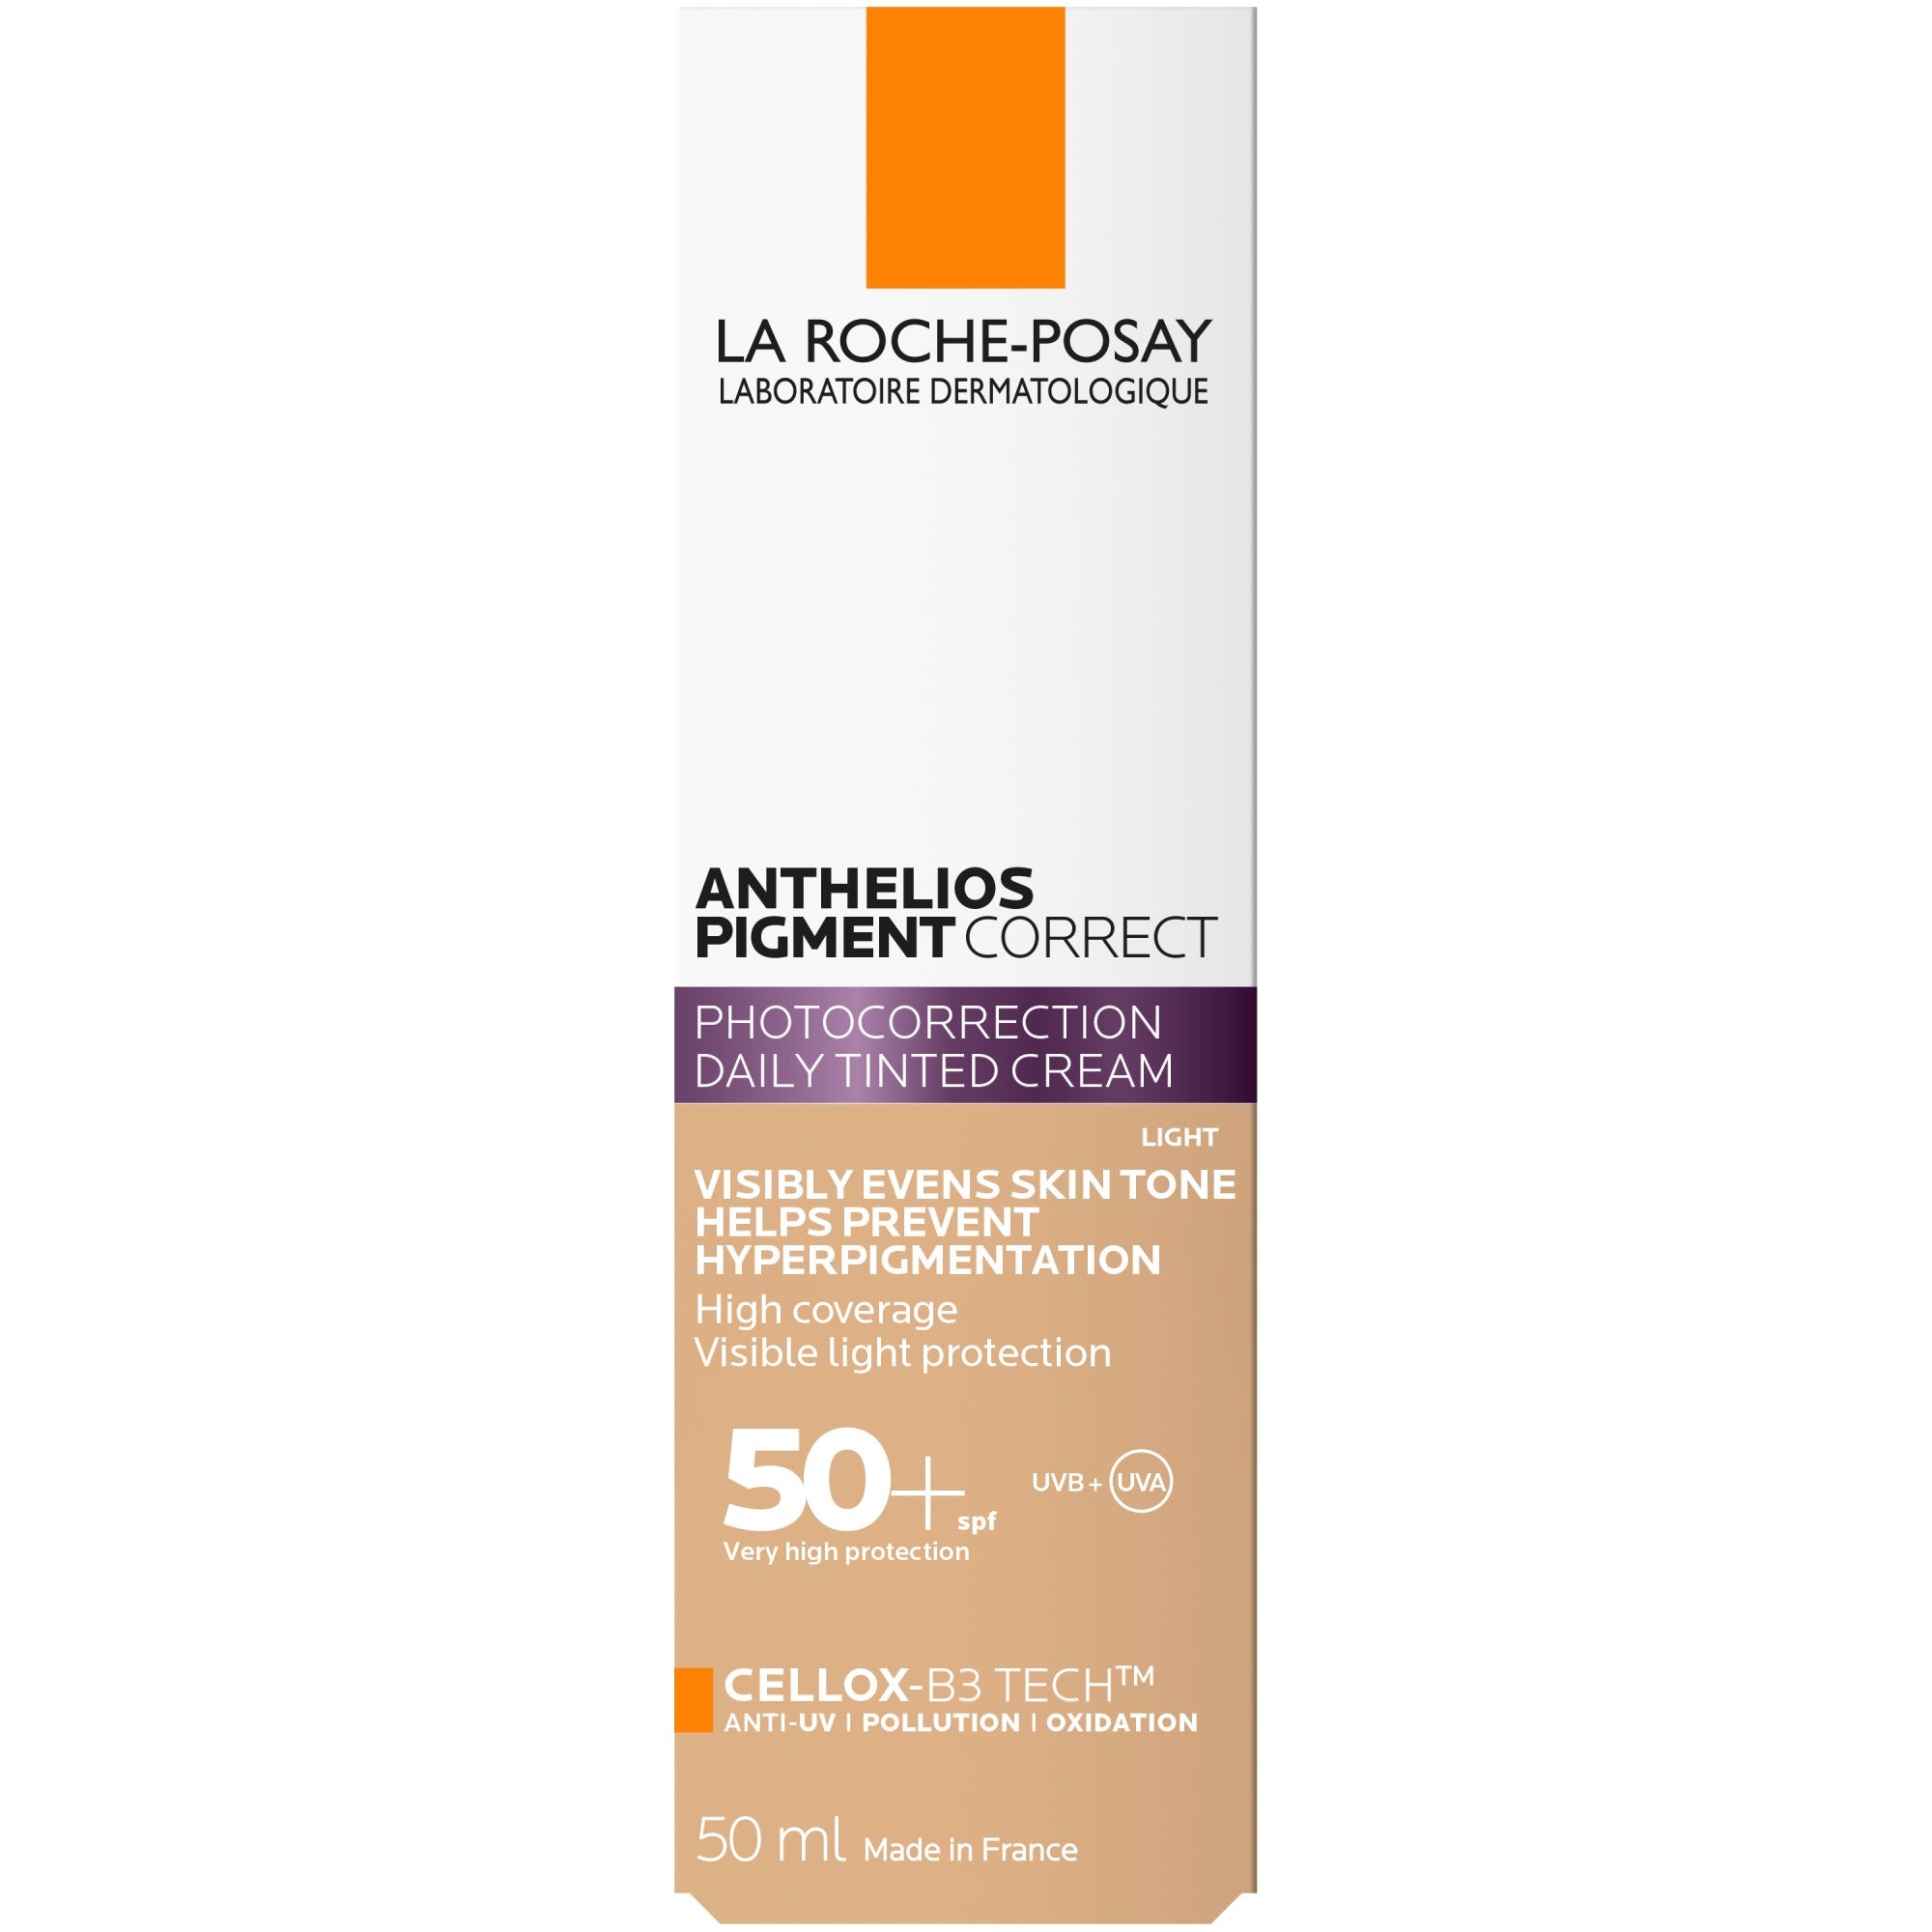 La Roche Posay Anthelios Pigment Correct Sun Cream SPF50 For Hyperpigmentation 50ml Box